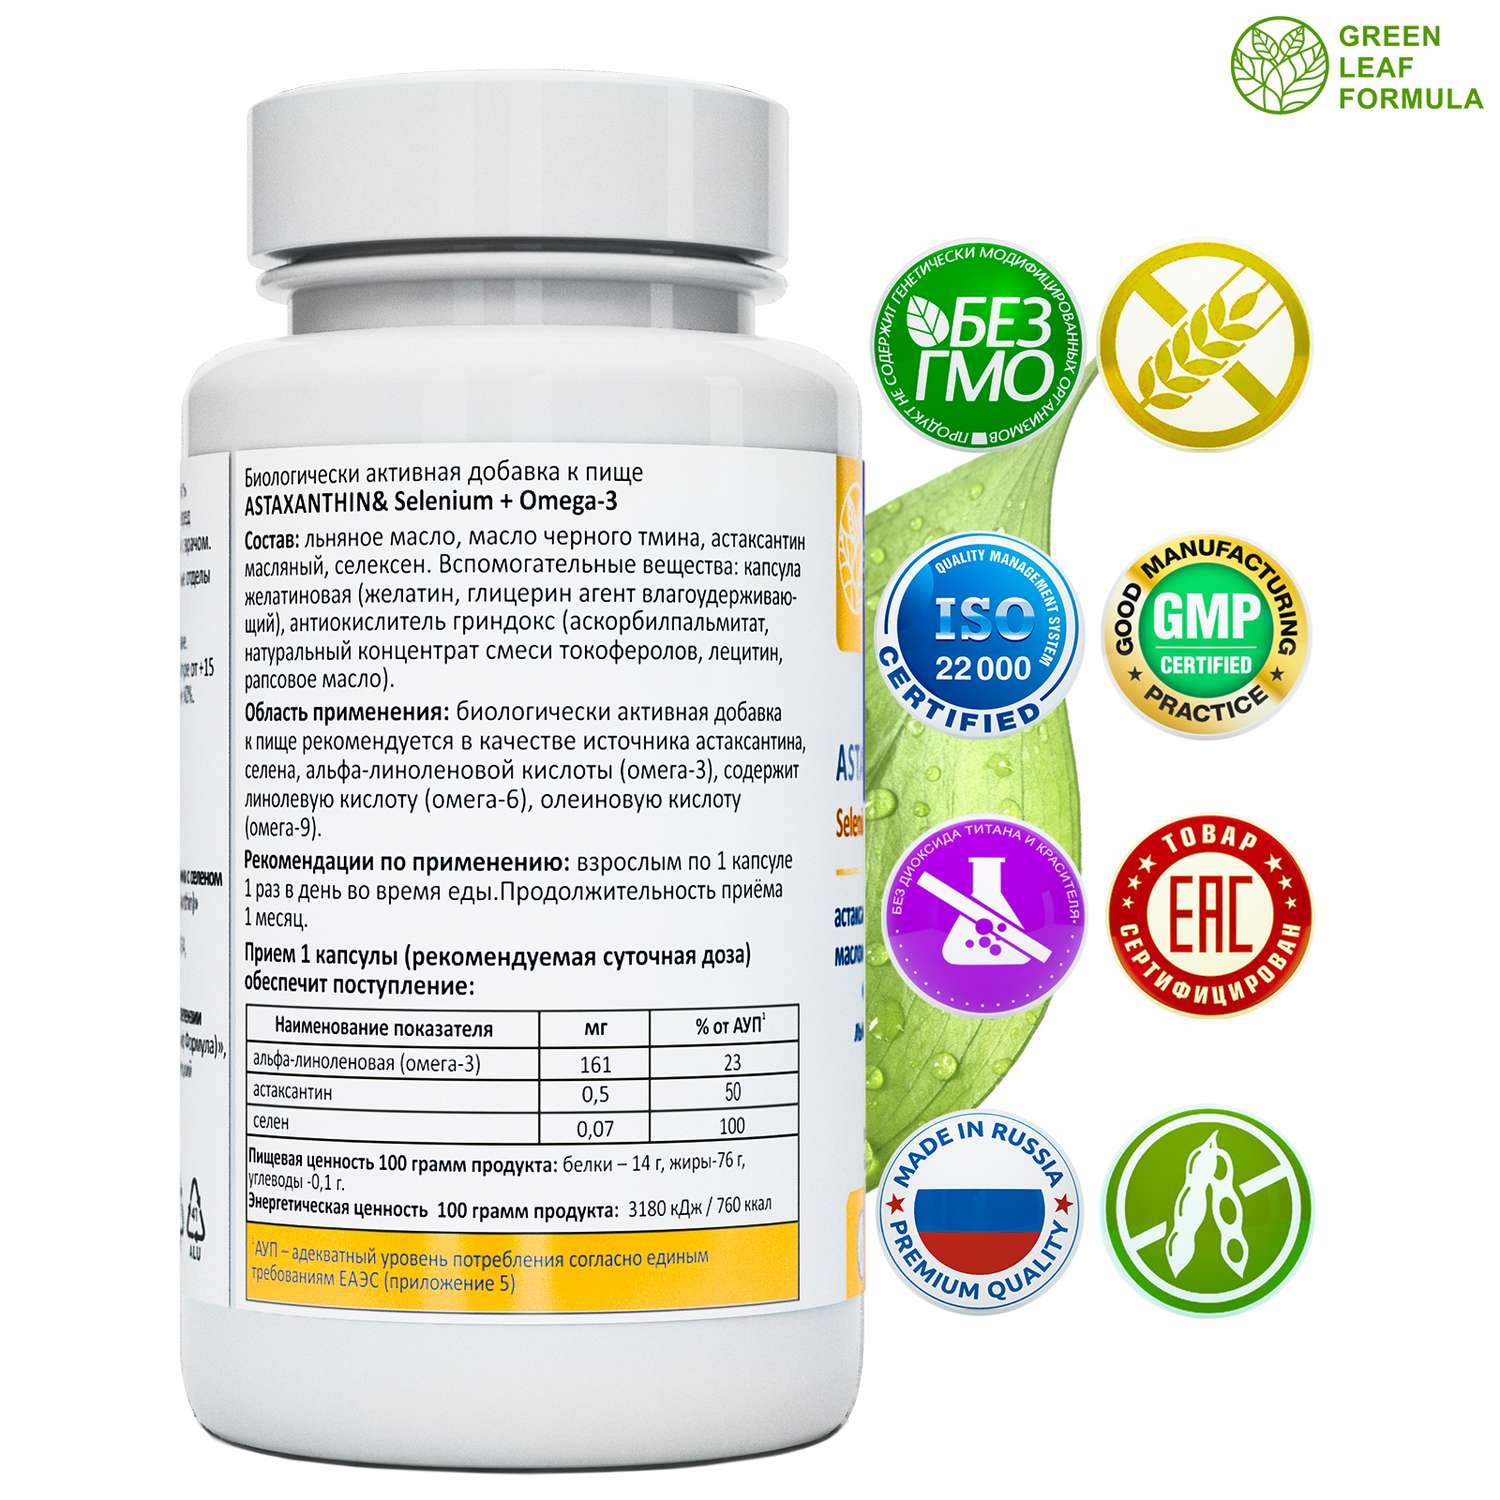 Астаксантин антиоксиданты Green Leaf Formula витамины для кожи волос и ногтей для глаз селен витамины омега 3-6-9 - фото 2